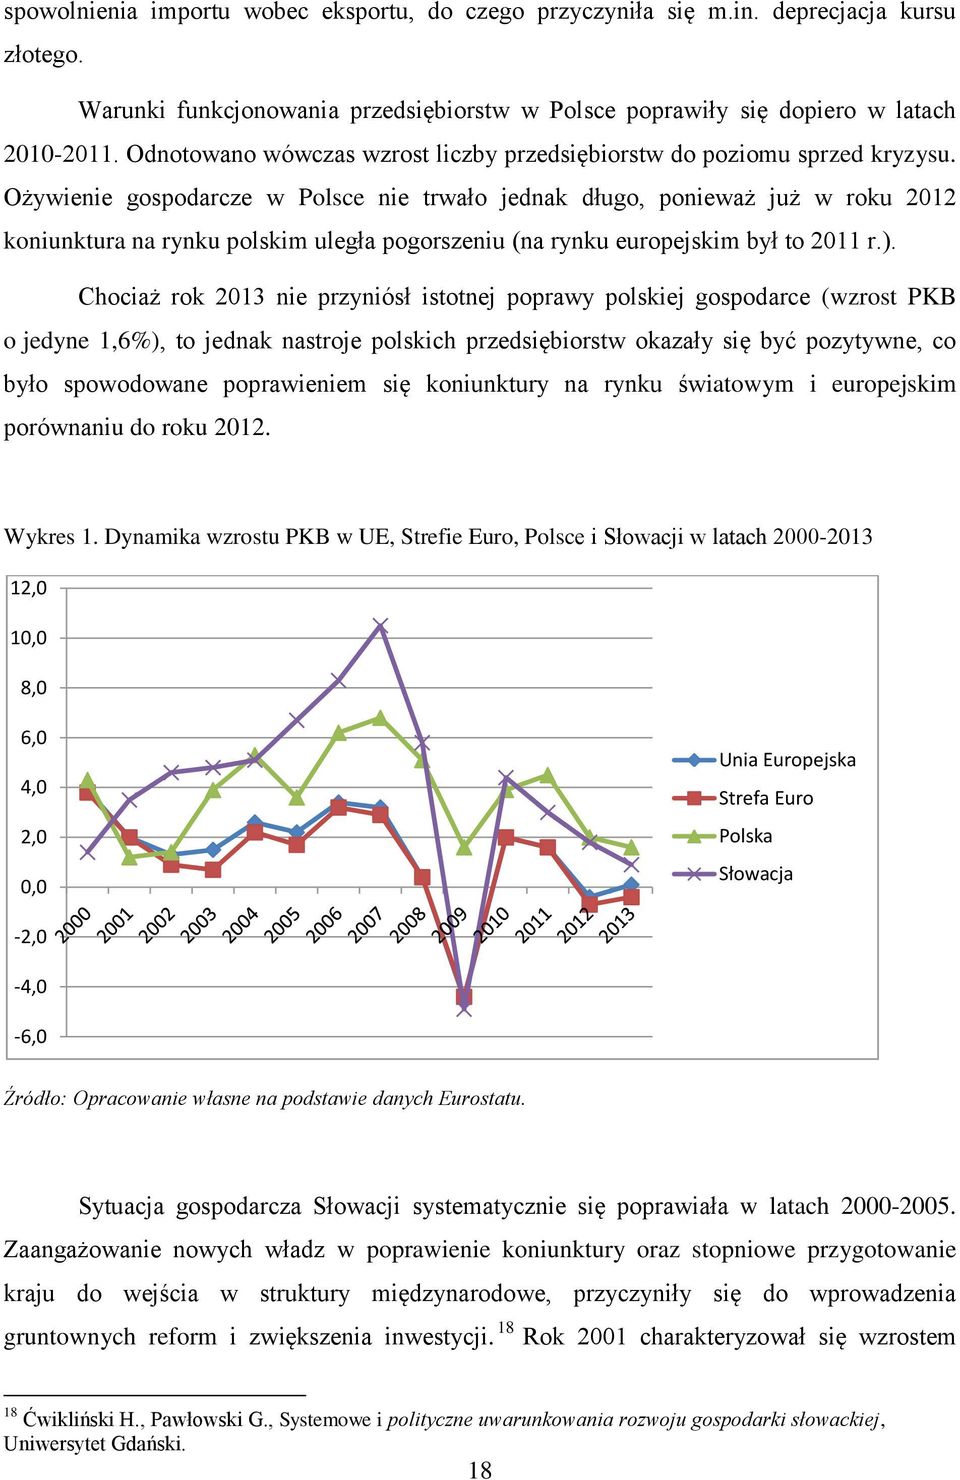 Ożywienie gospodarcze w Polsce nie trwało jednak długo, ponieważ już w roku 2012 koniunktura na rynku polskim uległa pogorszeniu (na rynku europejskim był to 2011 r.).